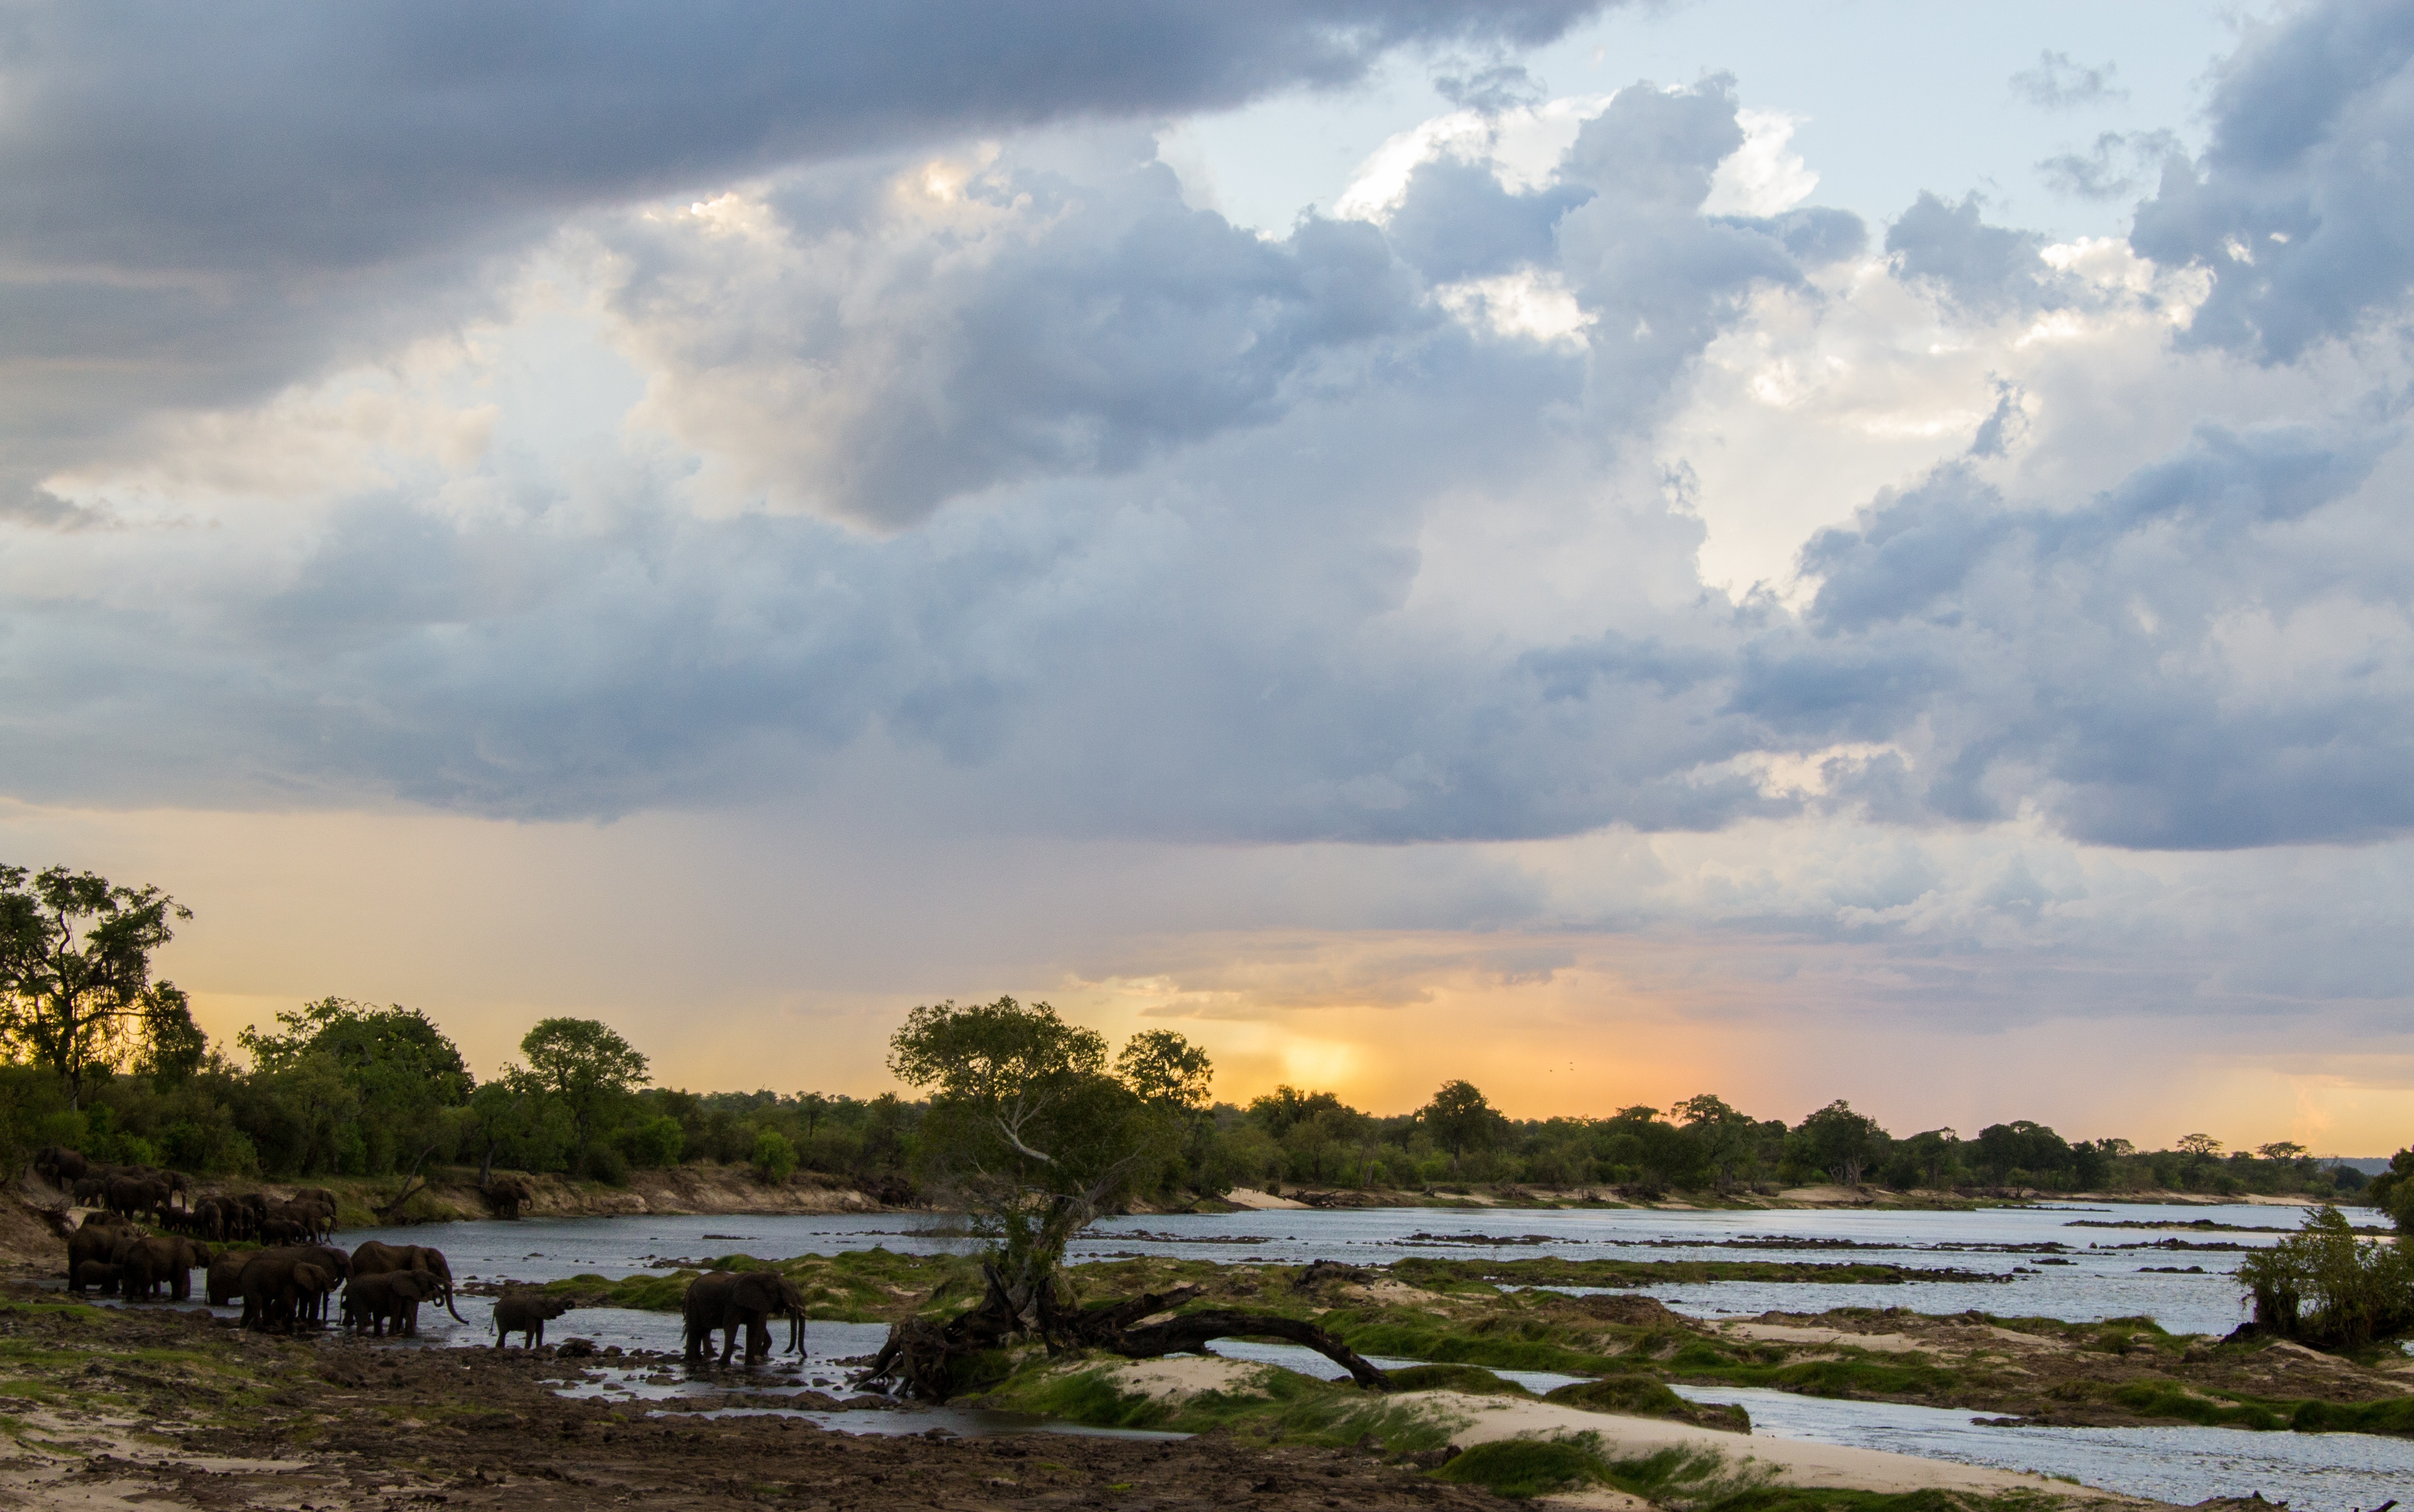 views of the Zambezi